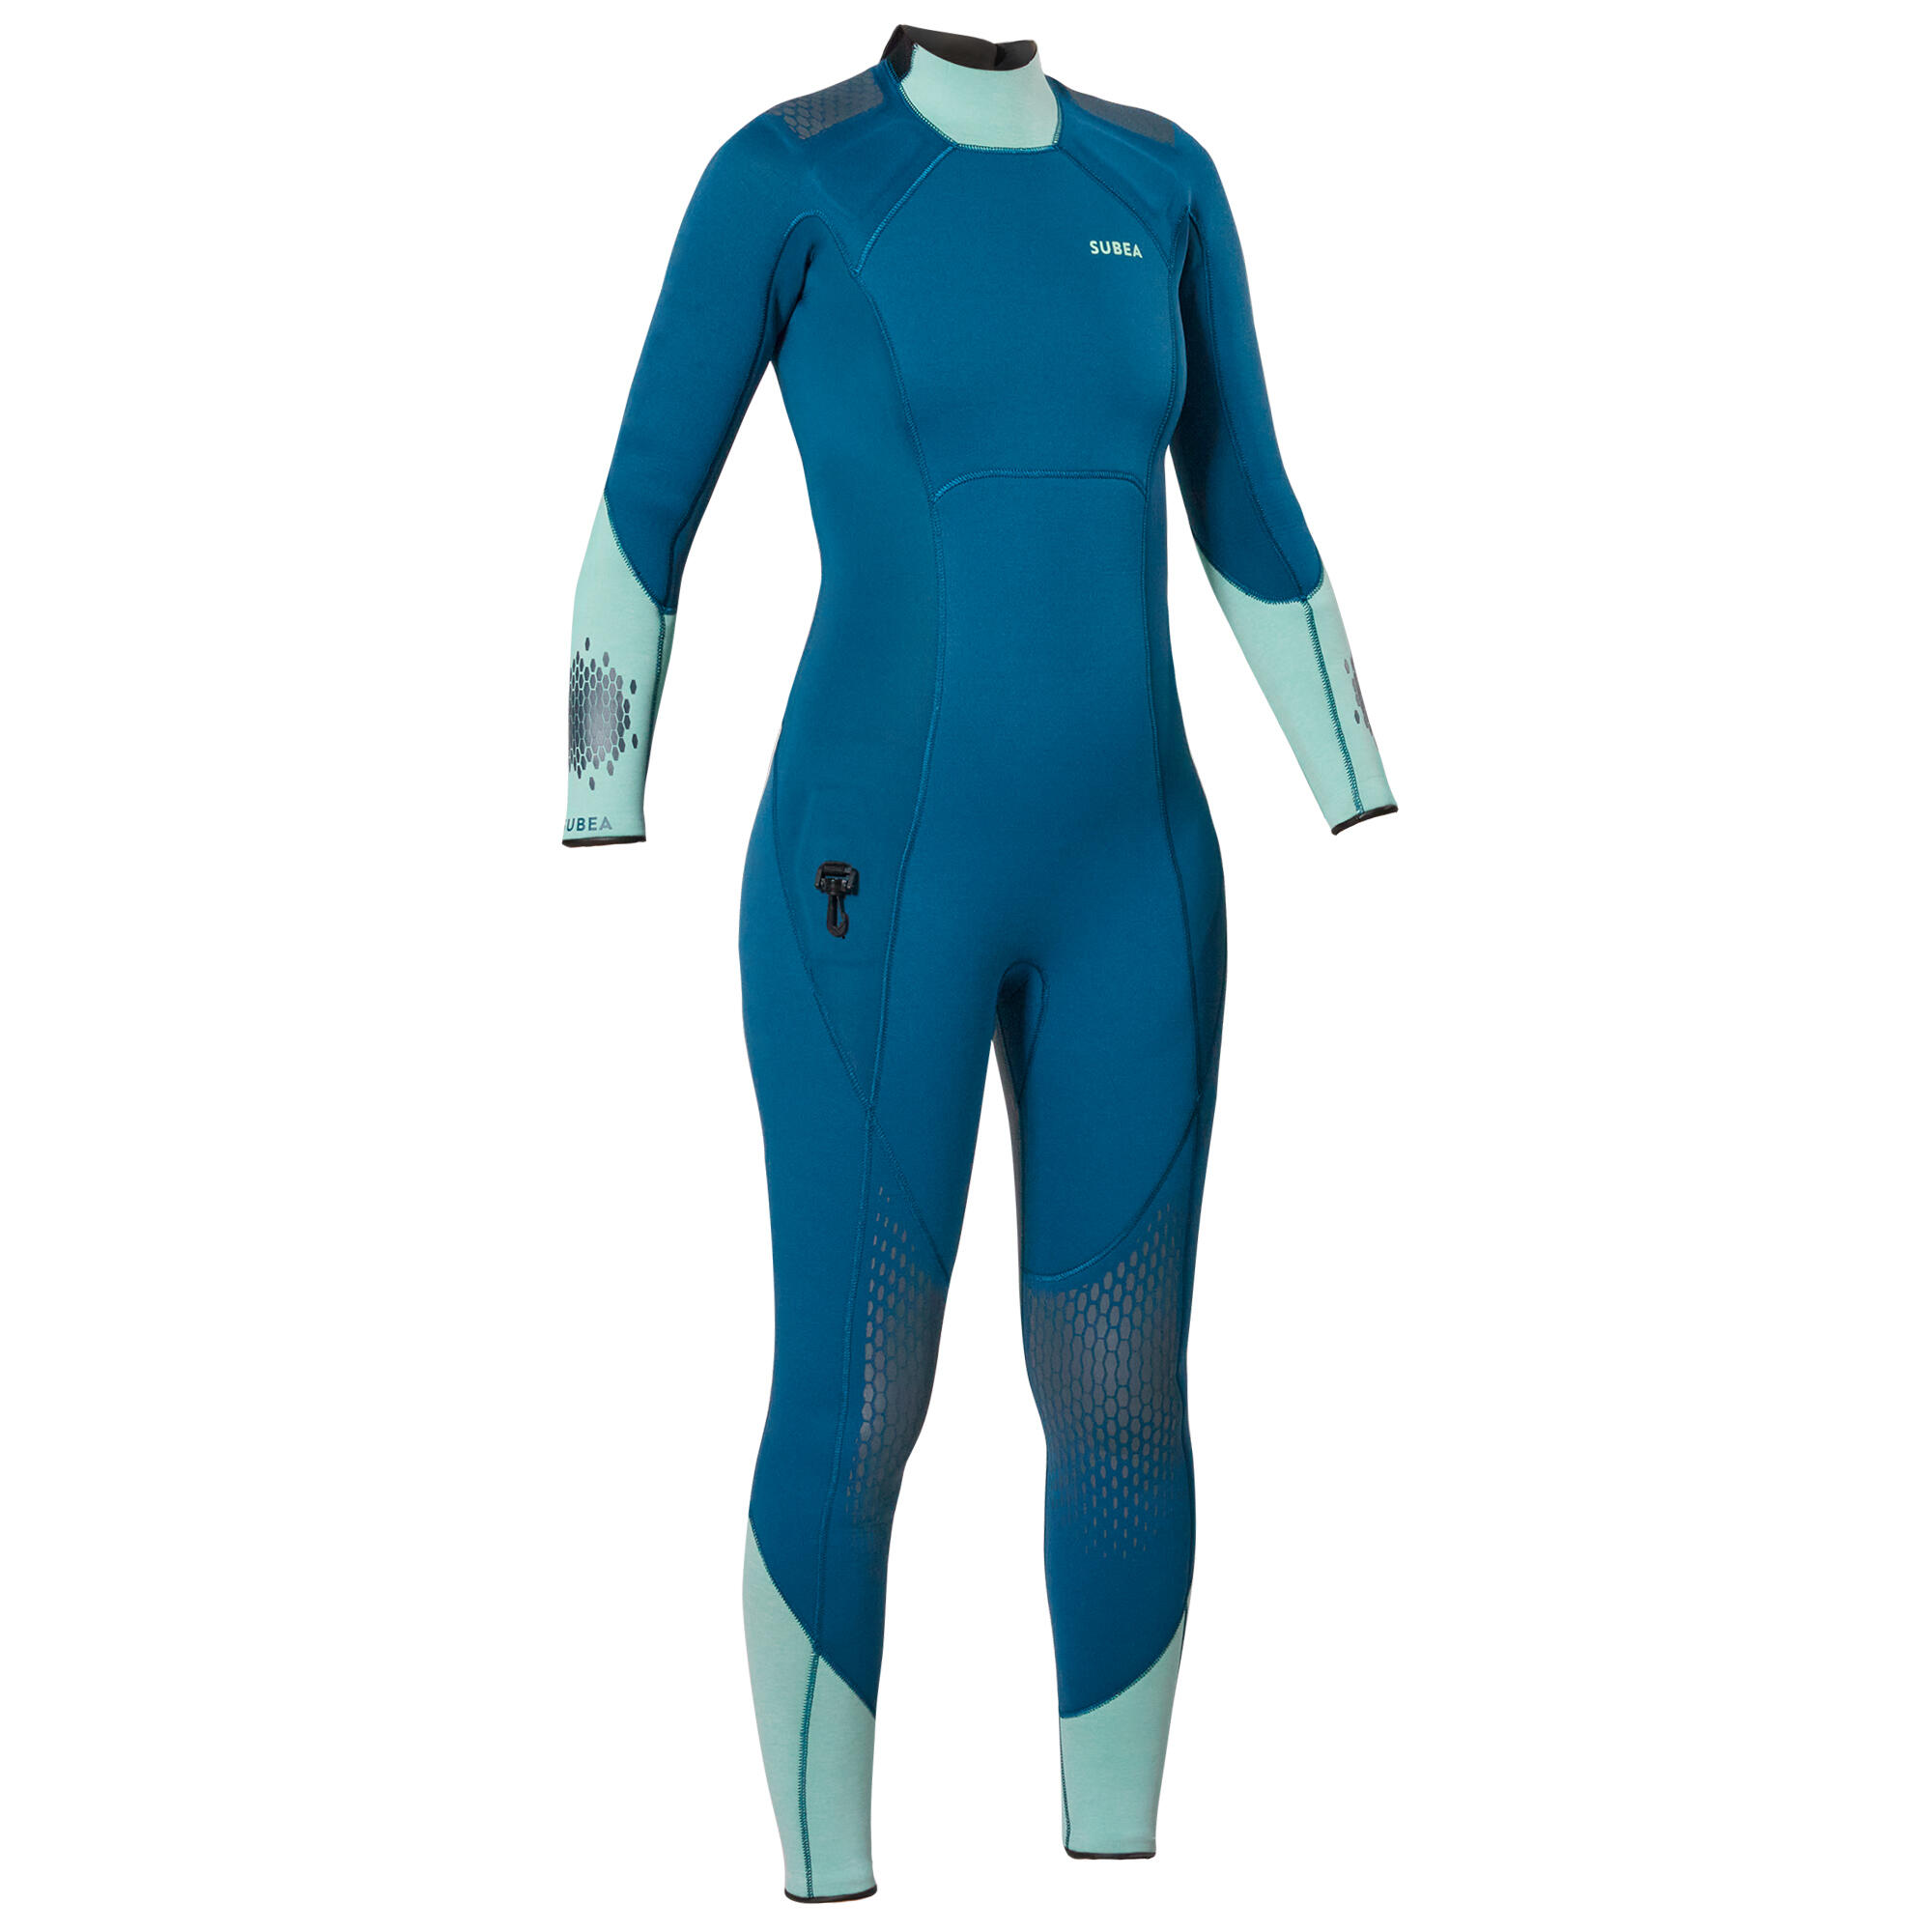 Women's diving wetsuit 3 mm neoprene SCD 900 blue 10/10